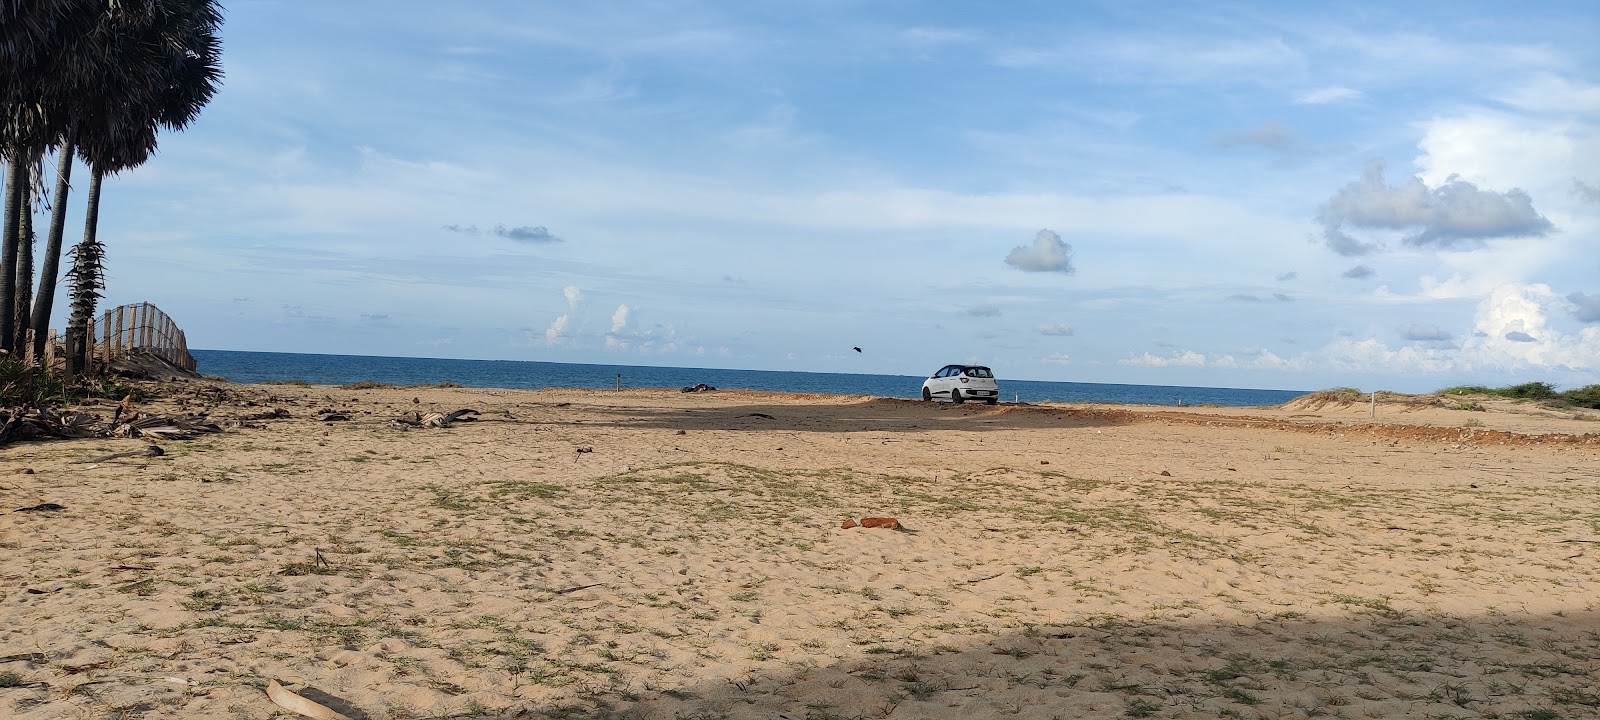 Manankudi Beach'in fotoğrafı düz ve uzun ile birlikte